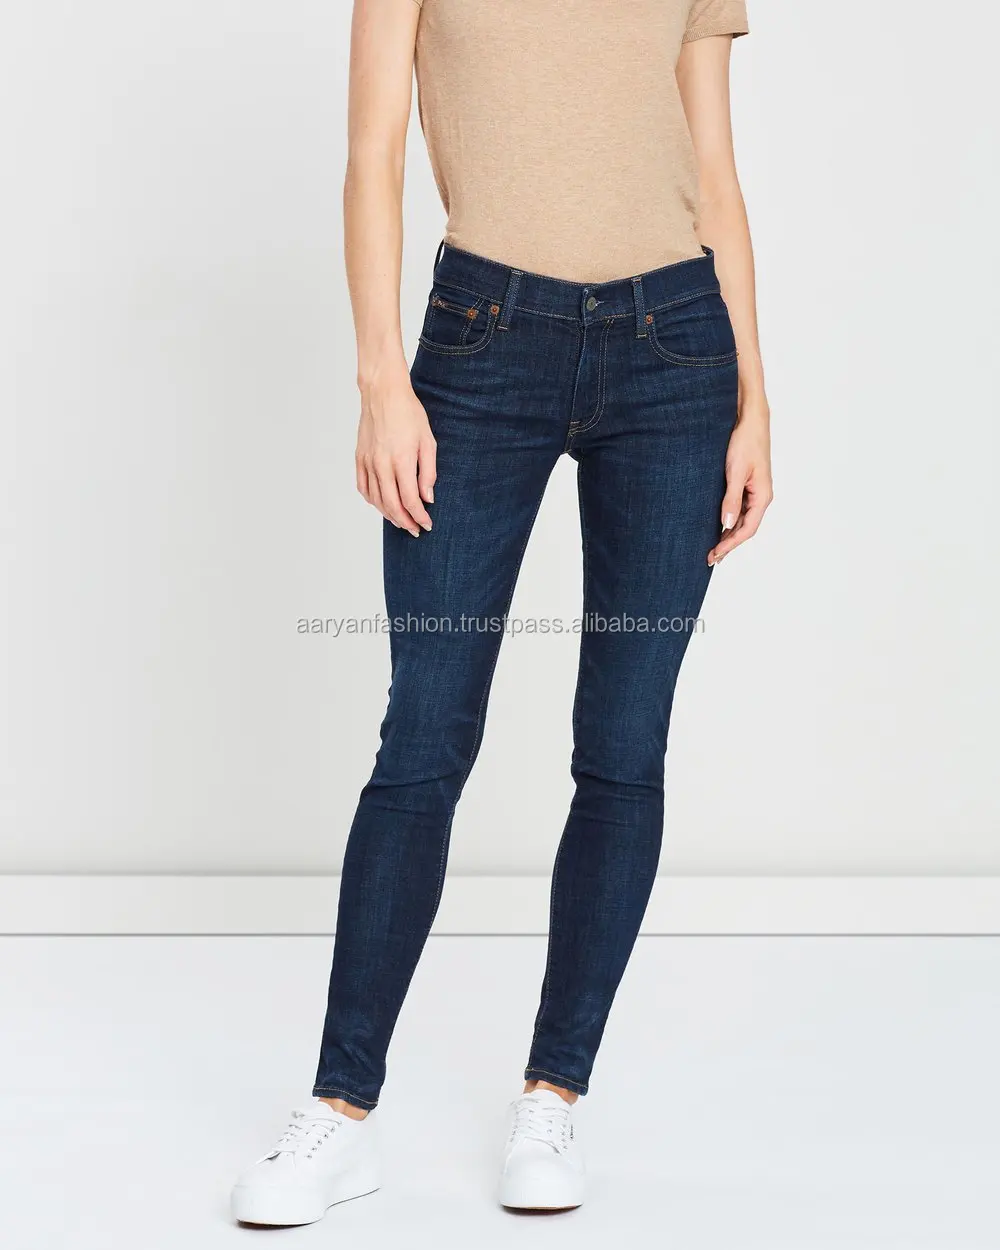 ladies jeans pant top